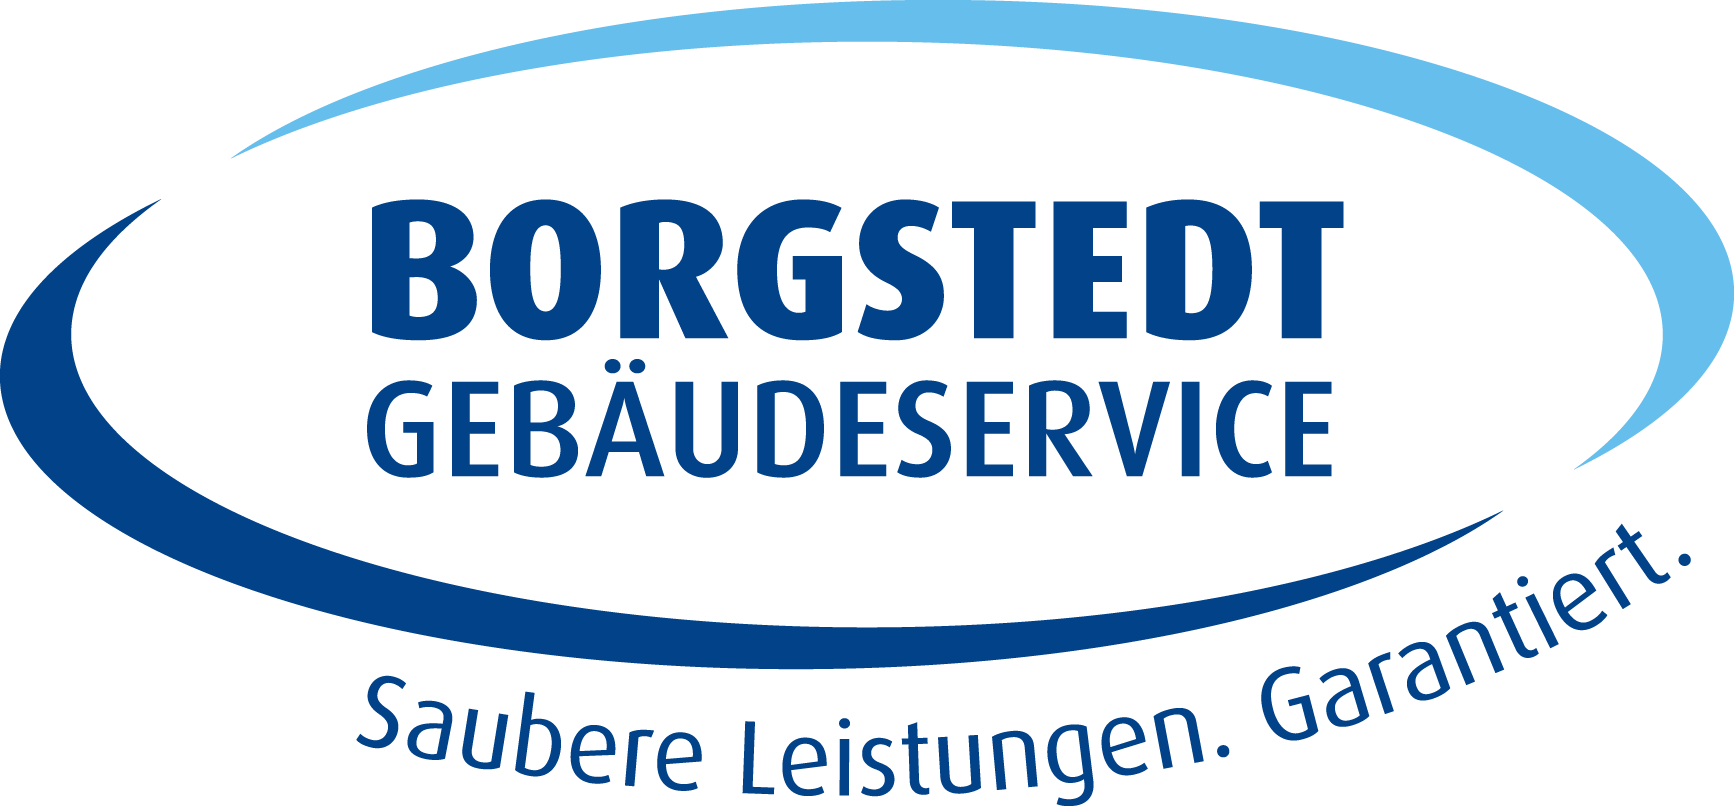 Borgstedt Gebäudeservice GmbH